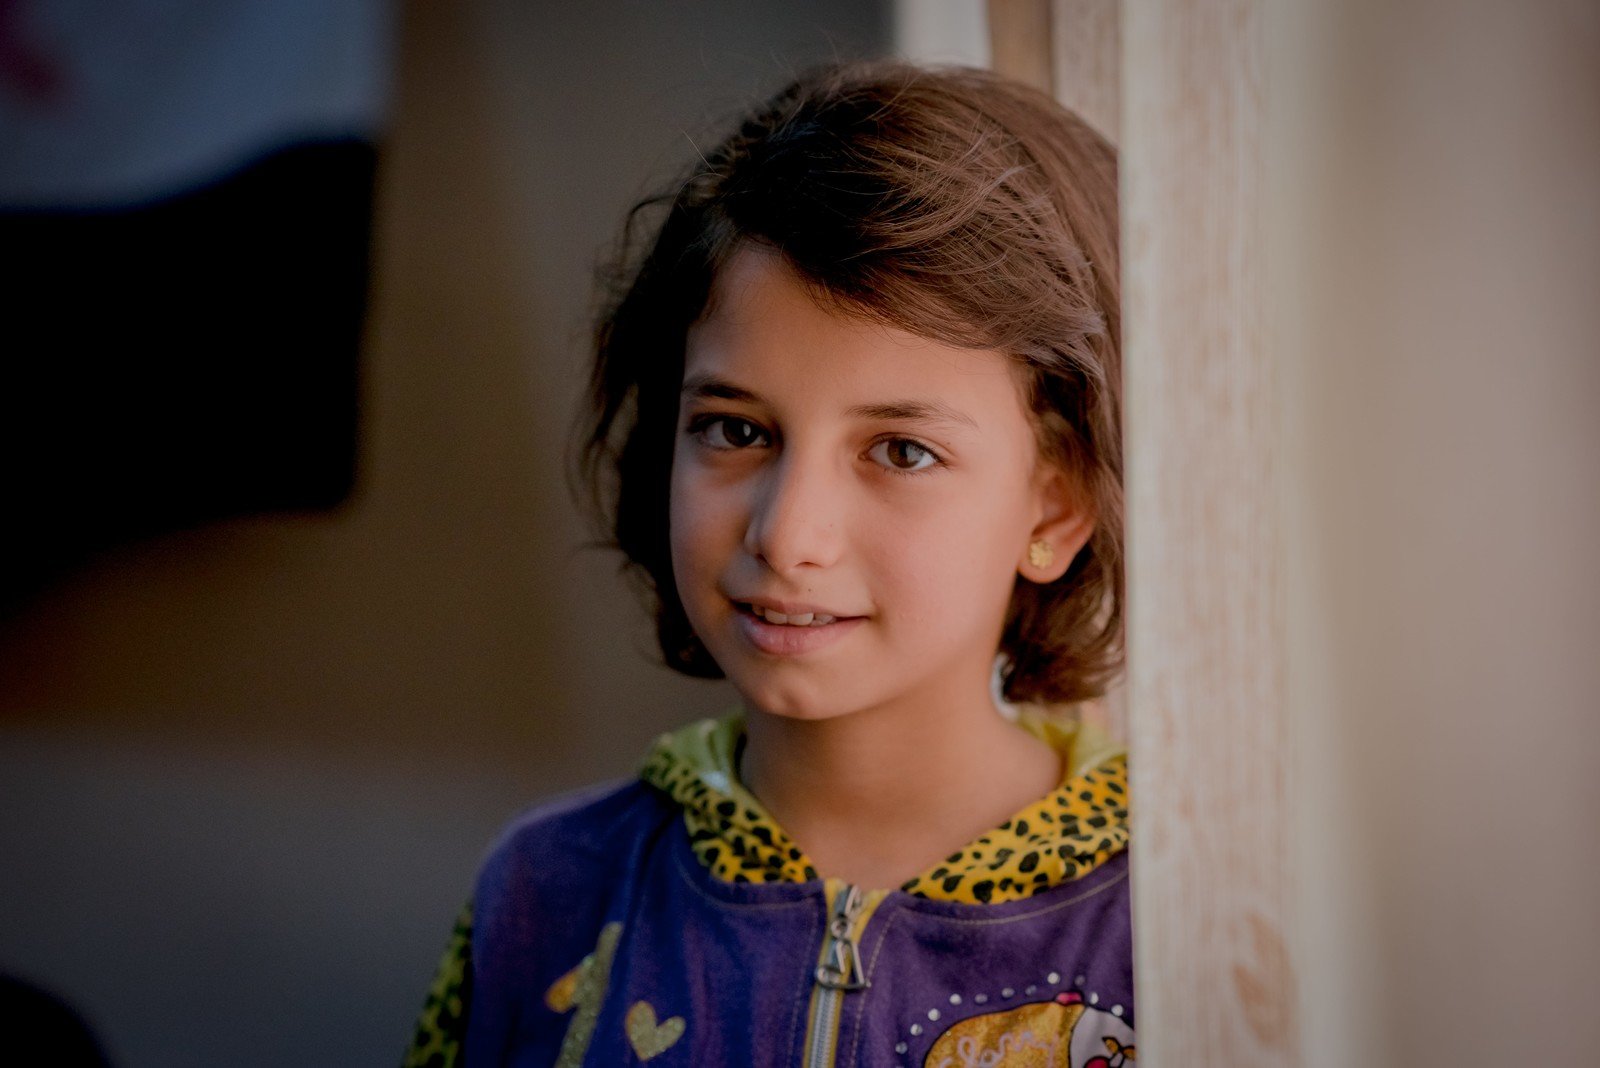 11歲的Sara與父親等一家七口原居於敘利亞霍姆斯（Homs）。戰爭開始時，他們一家由家鄉驅車南下，途中Sara頭部遭槍擊所傷。樂施會義務攝影師潘蔚能與樂施會負責人道項目的同事探訪Sara一家，她和父親對我們講述逃離敘利亞時的驚險情景。現在她和家人居於約旦東北部地區的一幢大廈內。  而Sara的夢想，是能夠成為醫生，「因為可以幫助別人。」她說。 (攝影:潘蔚能/樂施會)